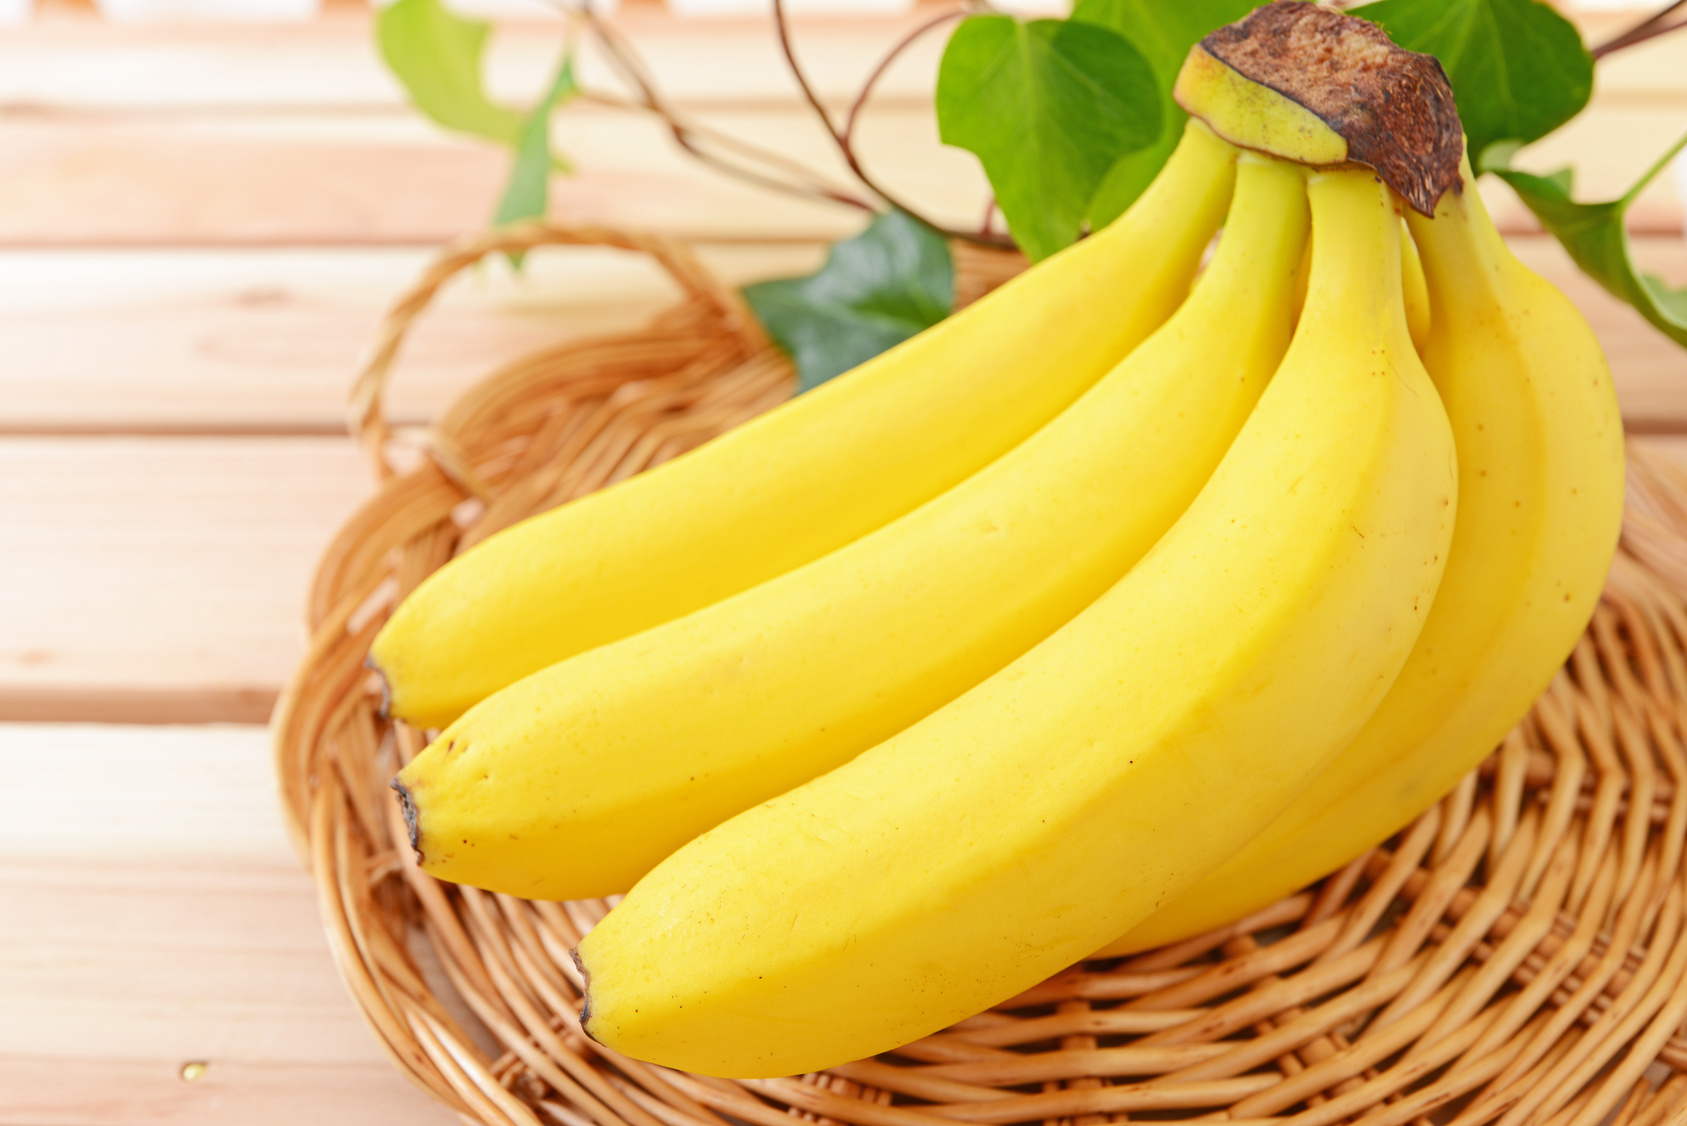 バナナの冷凍保存 解凍方法とレシピをご紹介 写真付きで解説 急速冷凍 による高品質な業務用食材通販マーケット